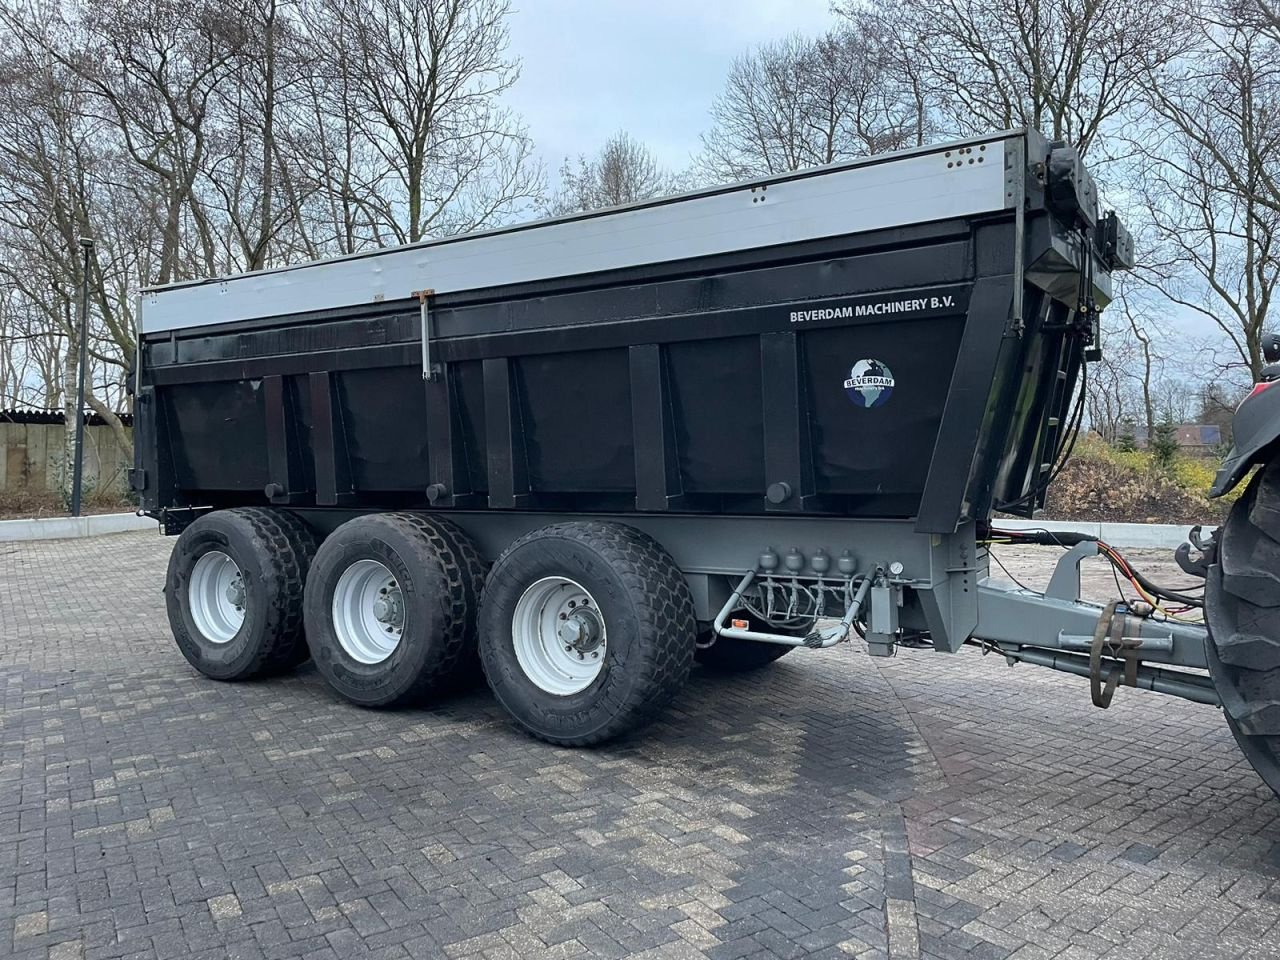 Häcksel Transportwagen des Typs Roagna 34 ton dumper, Gebrauchtmaschine in Vriezenveen (Bild 1)